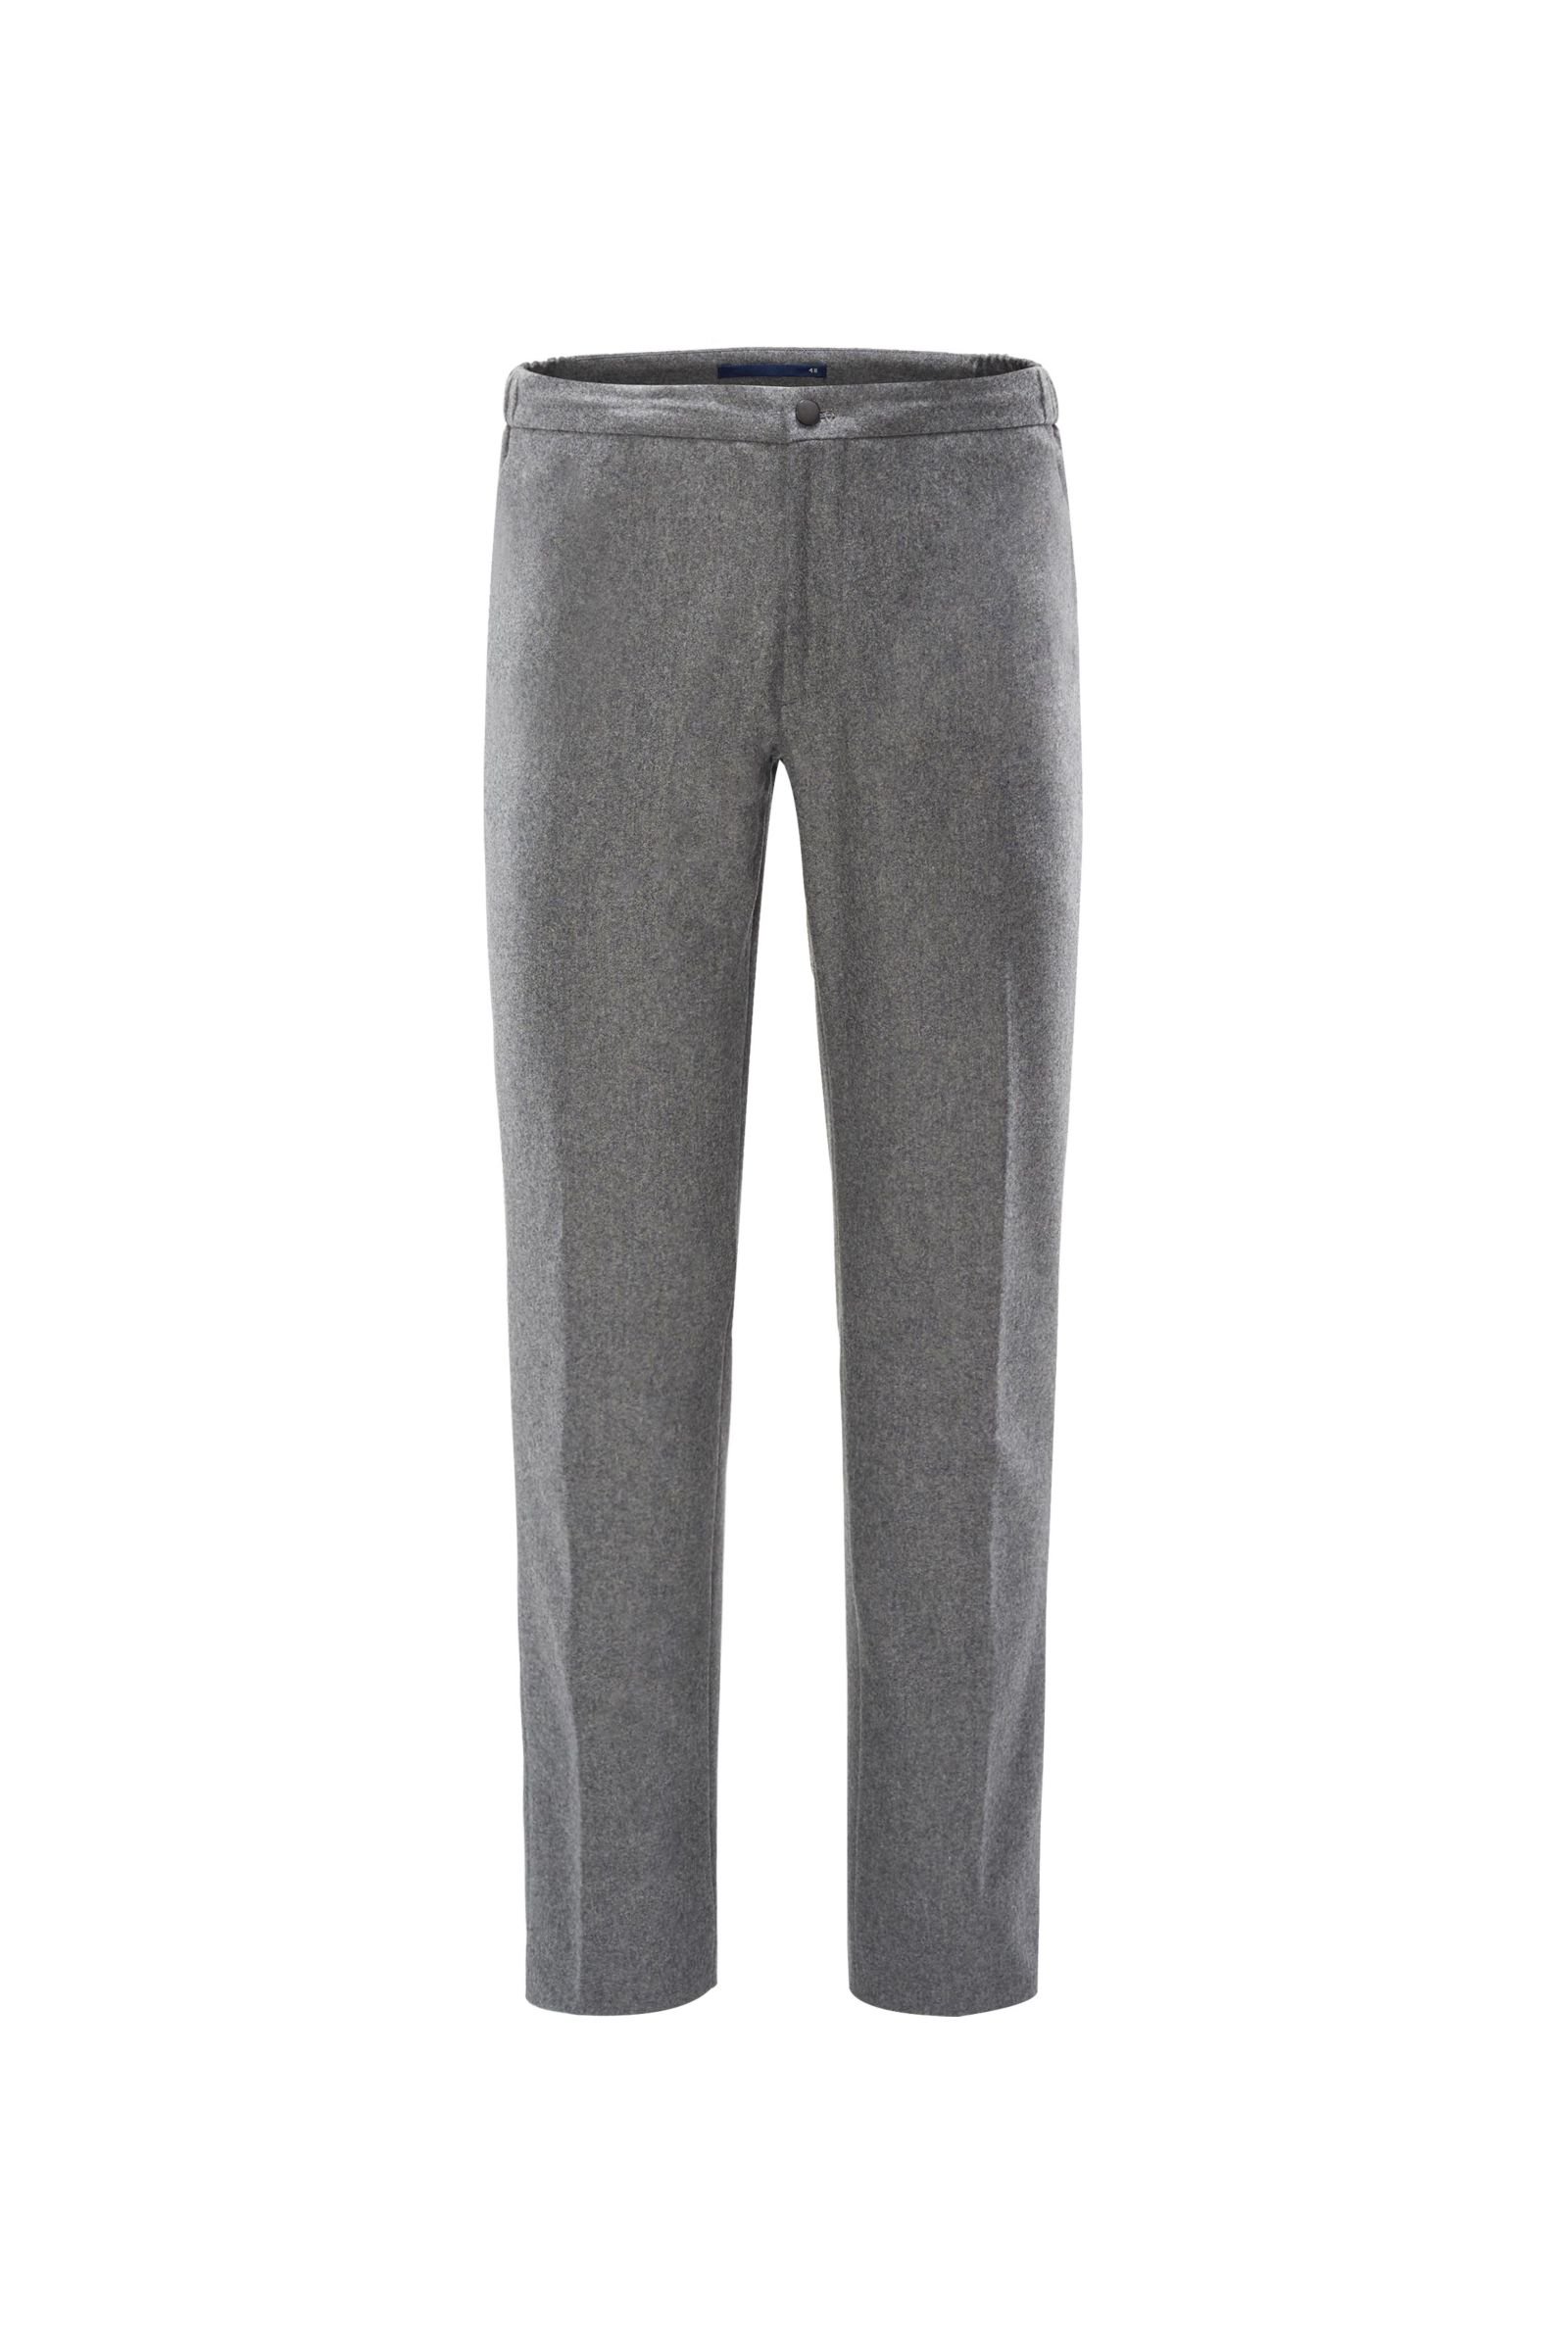 Wool jogger pants grey